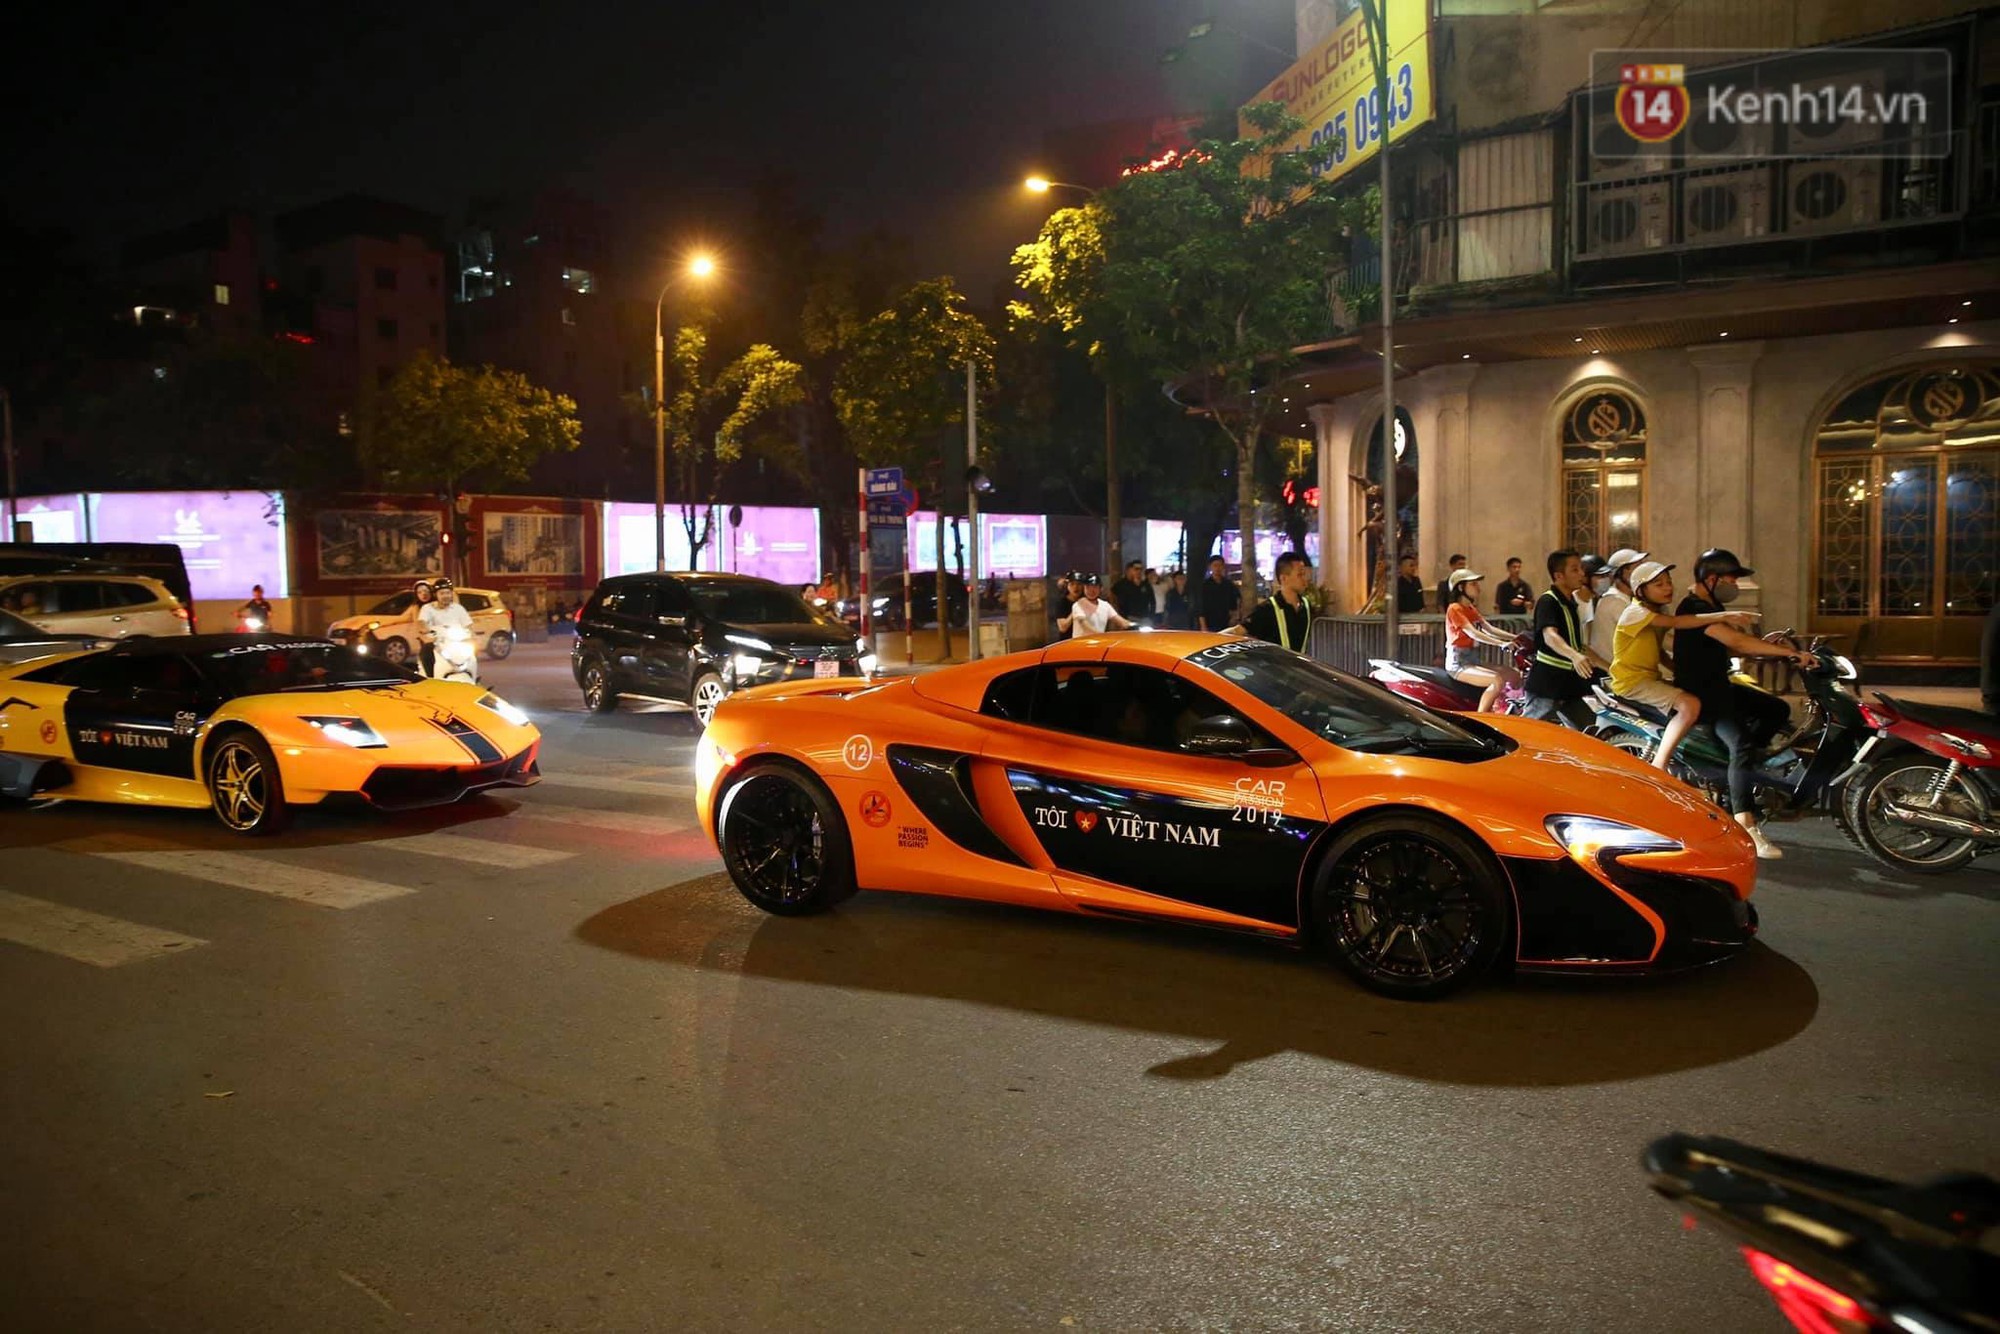 Dàn siêu xe hơn 300 tỷ rầm rộ tụ họp trên đường phố Hà Nội, Cường Đô La và vợ cũng xuất hiện với chiếc Audi R8V10-12